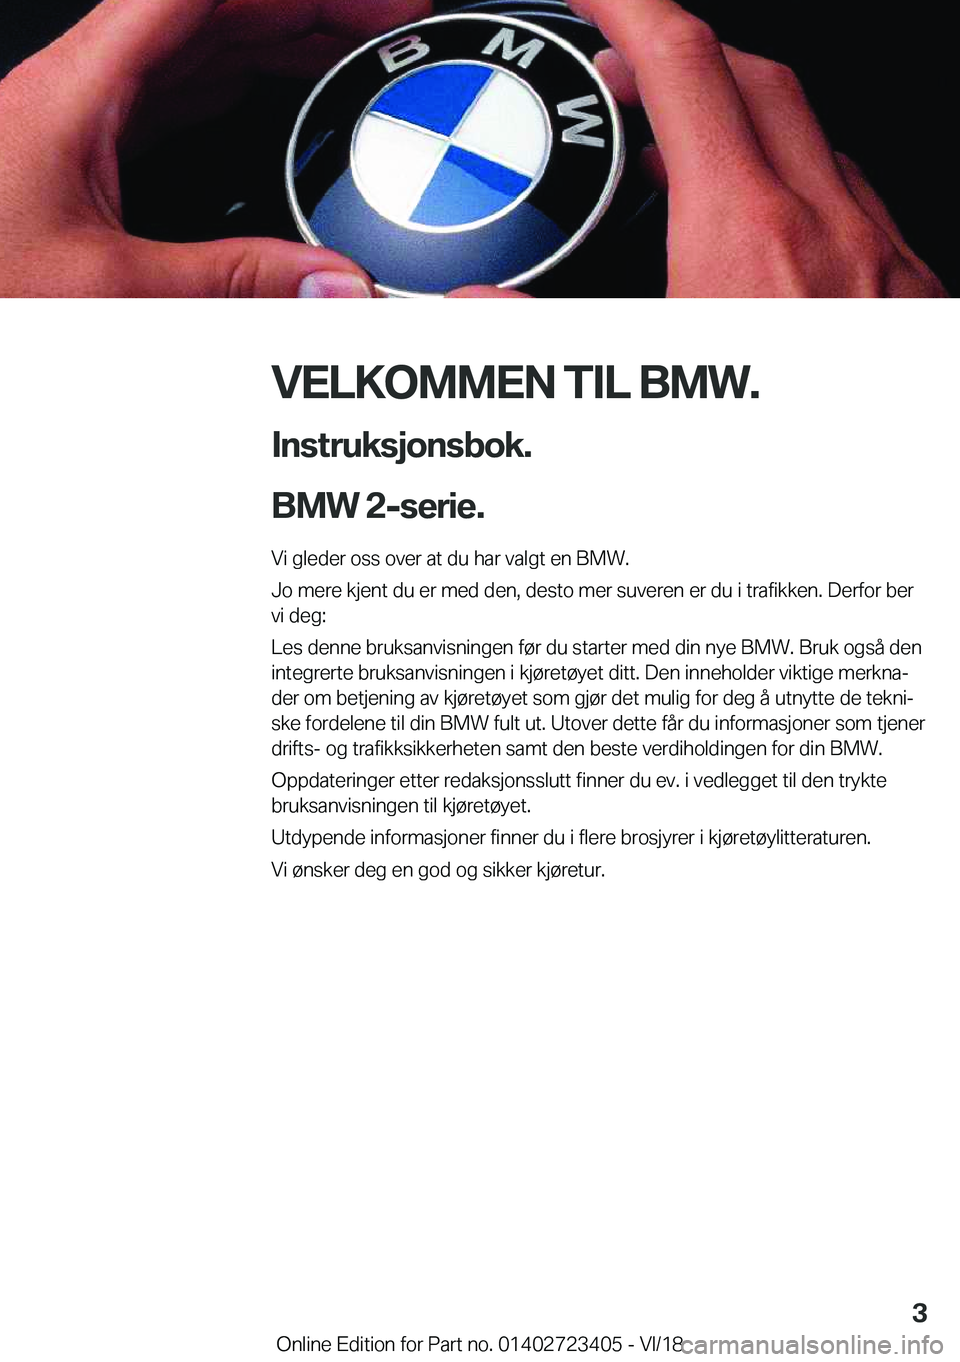 BMW 2 SERIES COUPE 2019  InstruksjonsbØker (in Norwegian) �V�E�L�K�O�M�M�E�N��T�I�L��B�M�W�.�I�n�s�t�r�u�k�s�j�o�n�s�b�o�k�.
�B�M�W��2�-�s�e�r�i�e�.�
�V�i��g�l�e�d�e�r��o�s�s��o�v�e�r��a�t��d�u��h�a�r��v�a�l�g�t��e�n��B�M�W�.
�J�o��m�e�r�e��k�